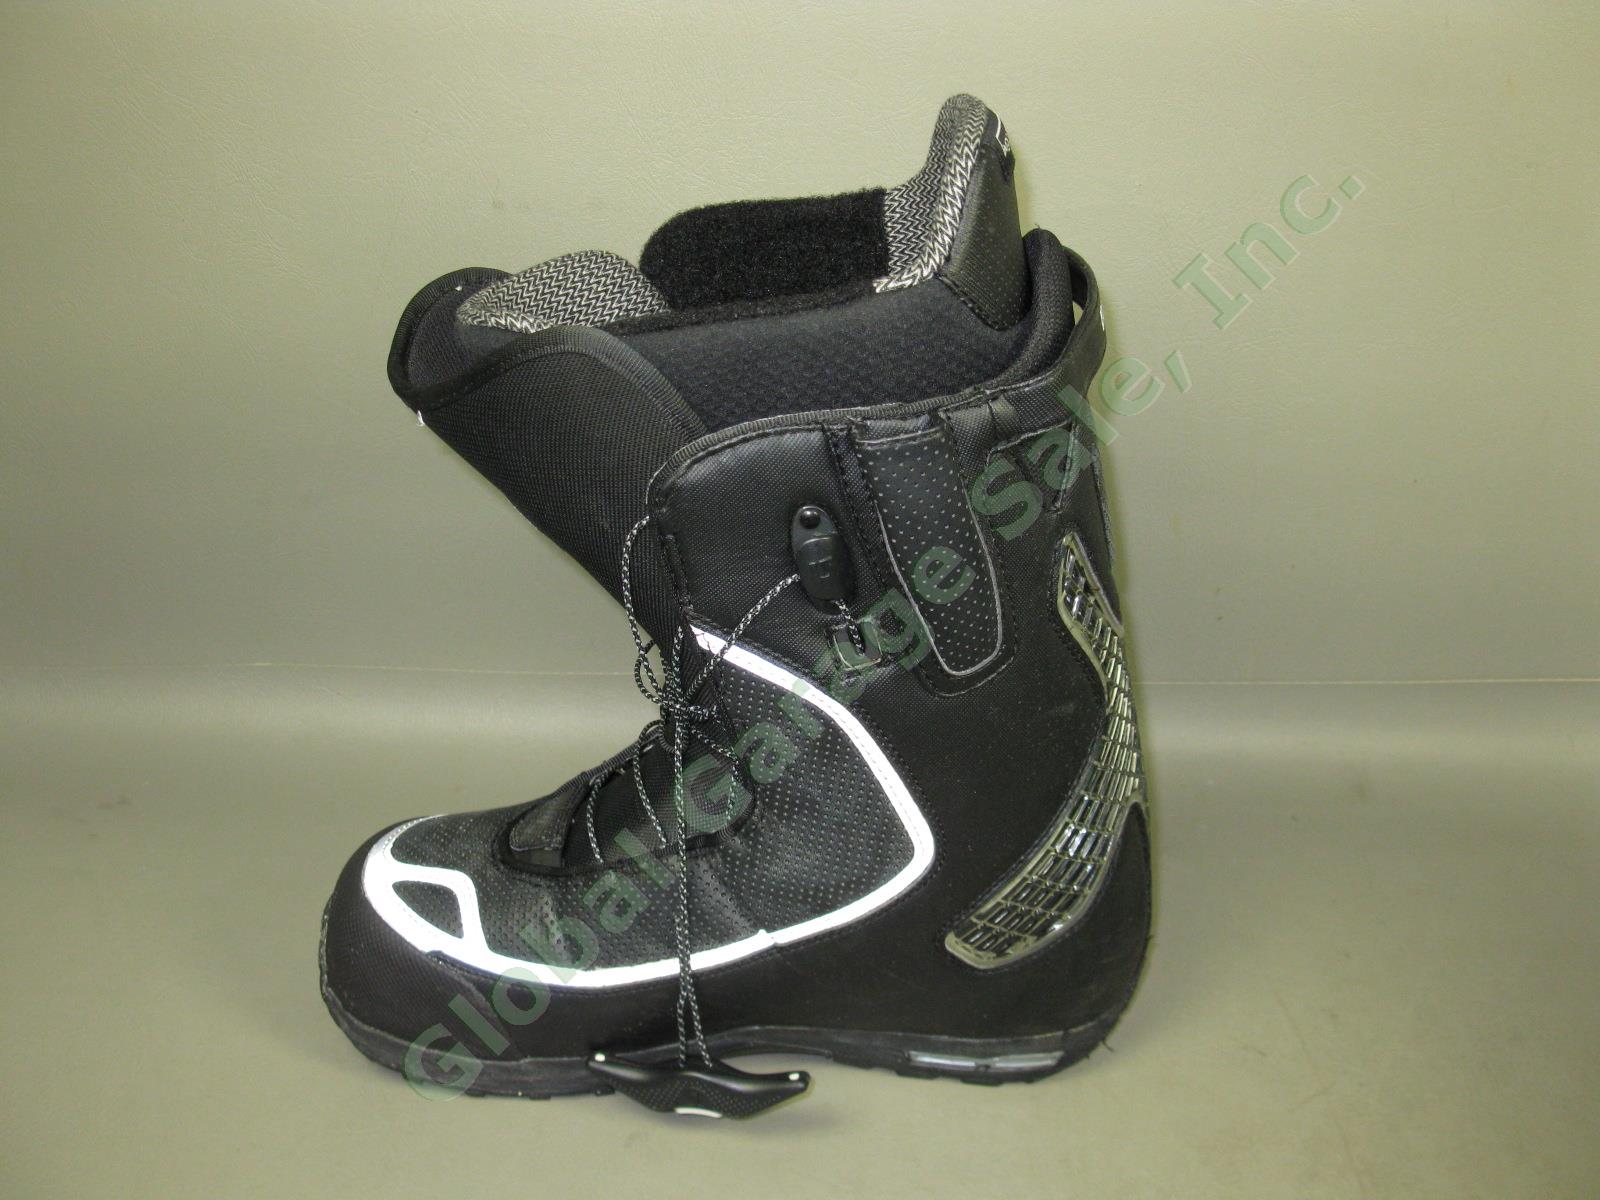 Mens Black/Silver Burton Driver X Snowboard Boots 10.5 W/ Box +$60 Aline Insoles 2